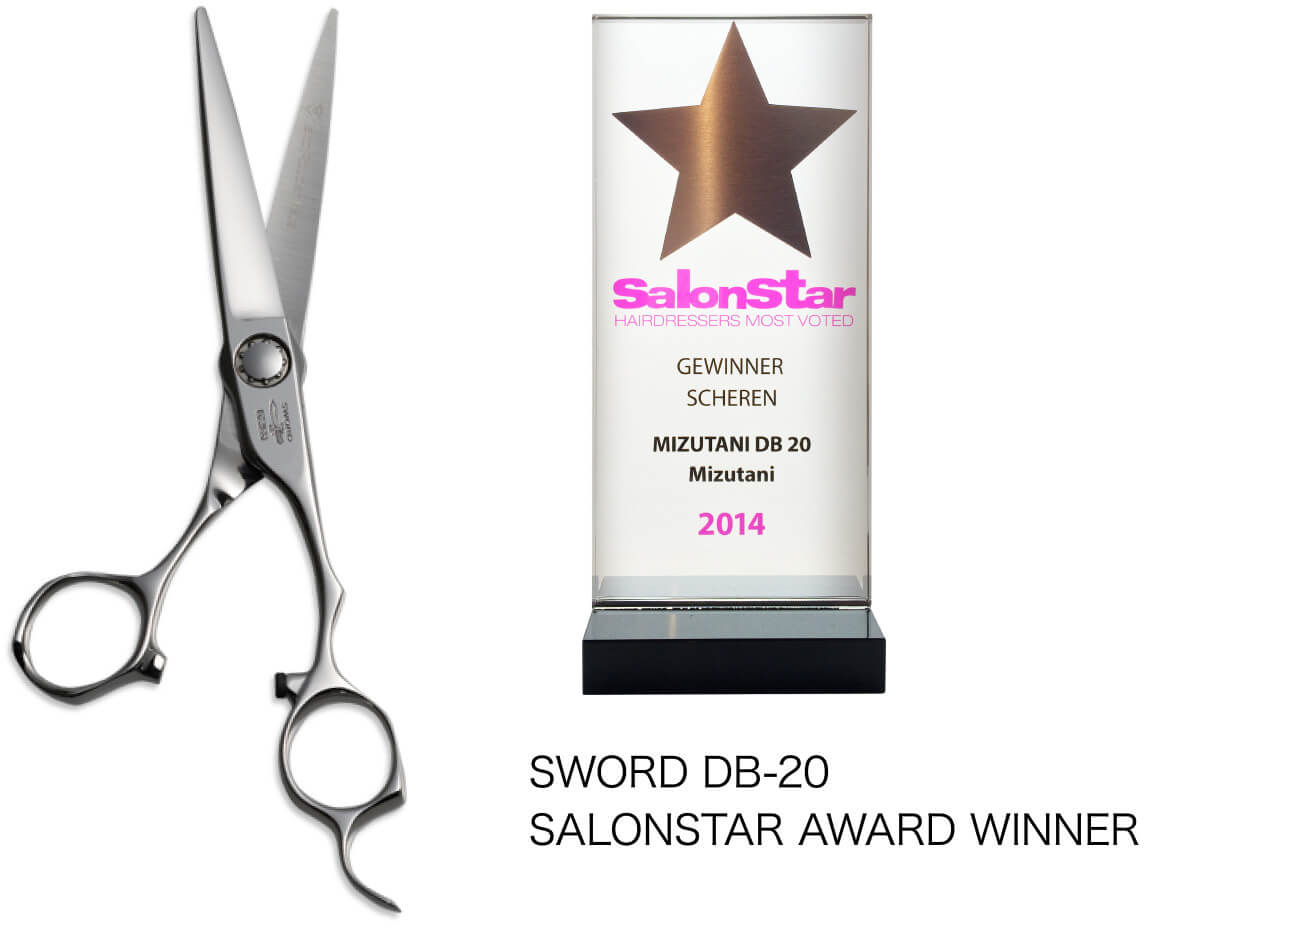 SWORD DB-20 SALONSTAR AWARD WINNER